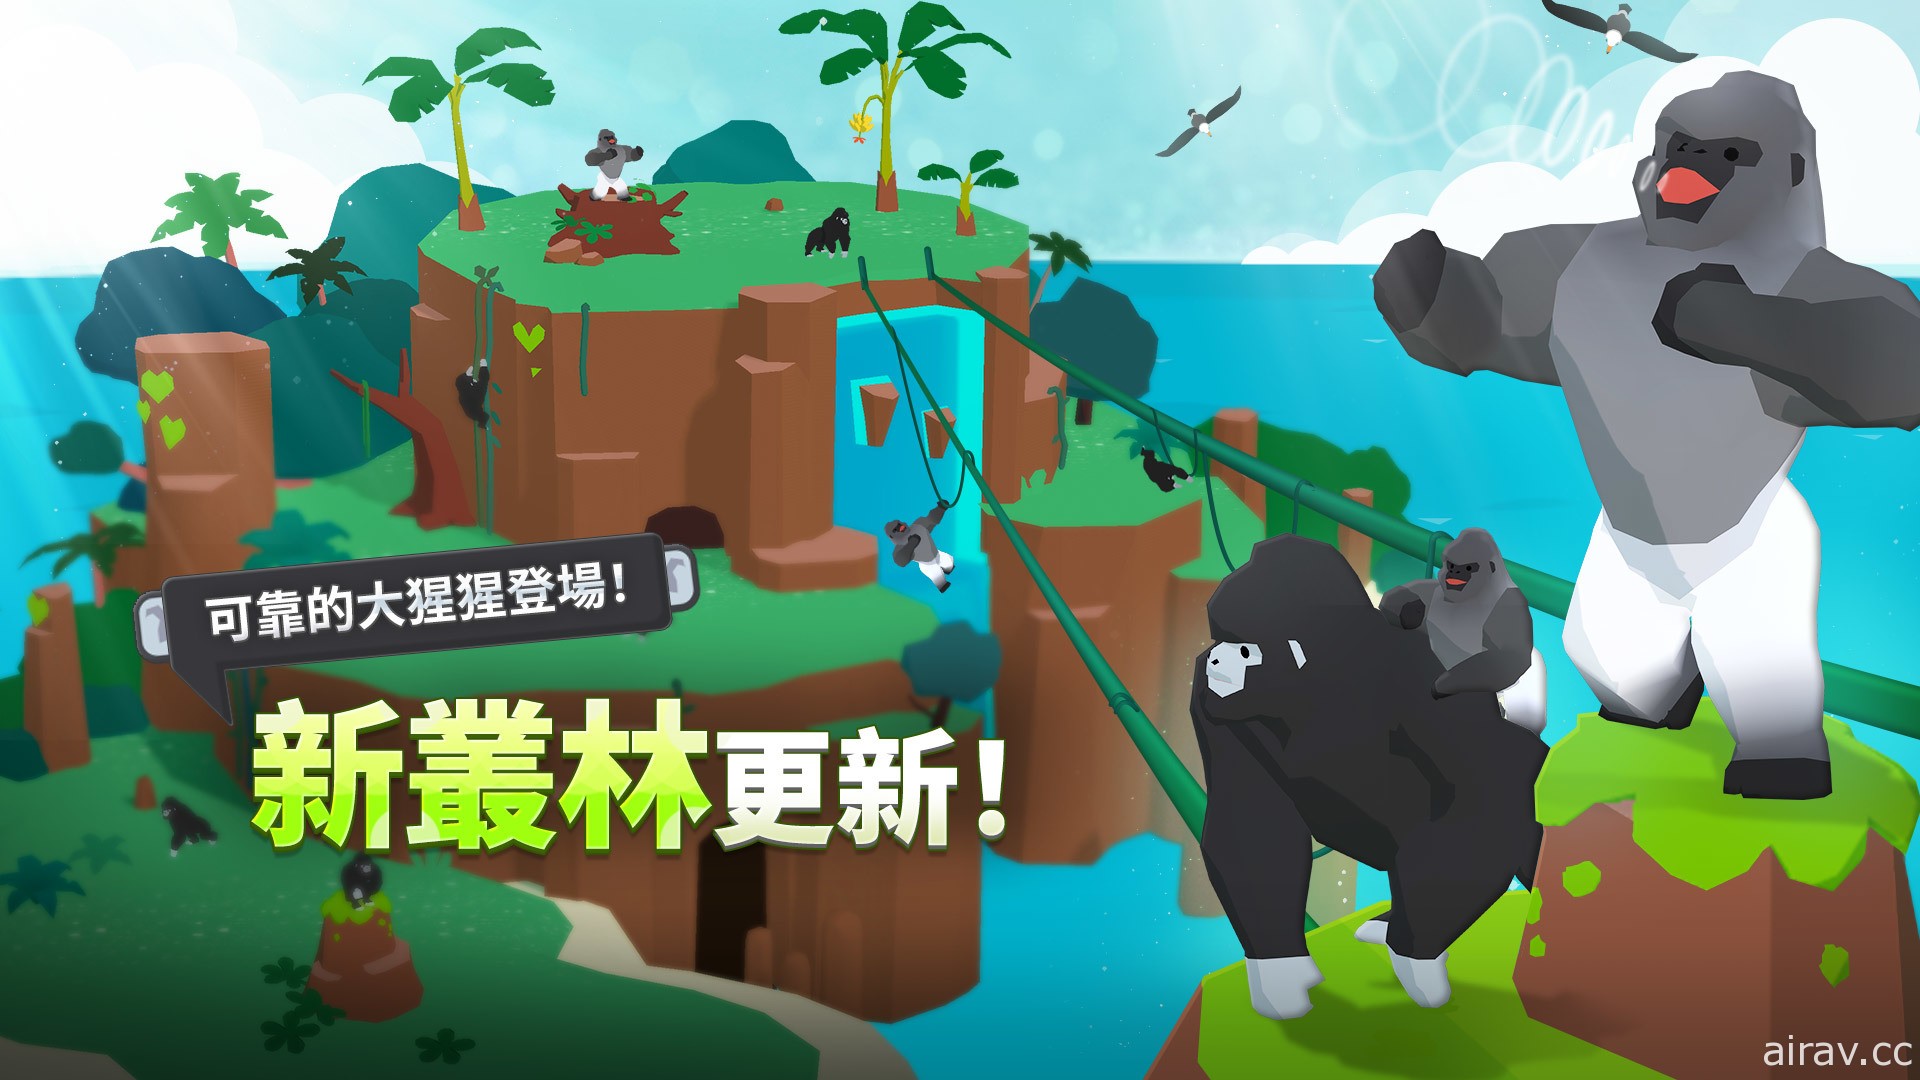 《森林小岛》更新“丛林”新地标 “大猩猩”和稀有动物“银背大猩猩”登场